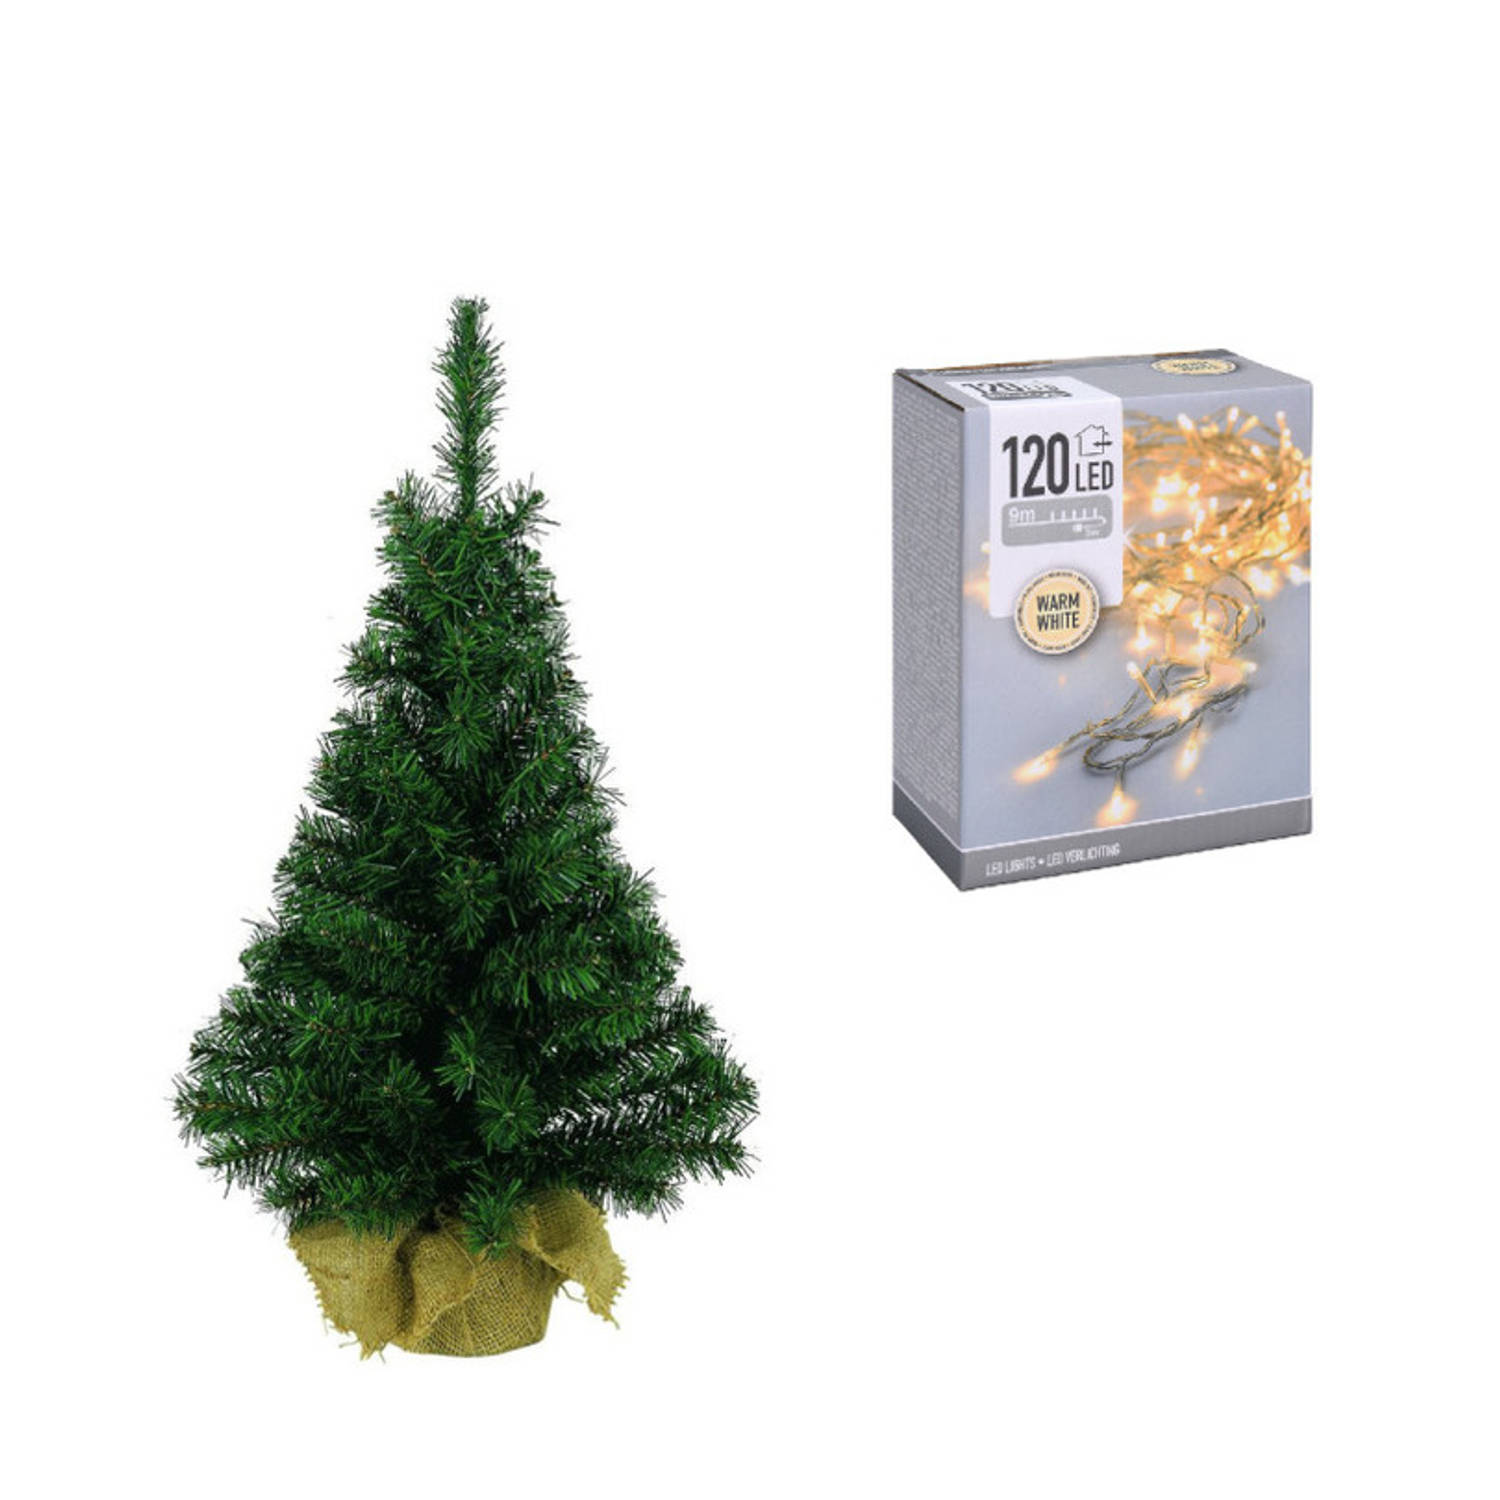 Volle kerstboom-kunstboom 75 cm inclusief warm witte verlichting Kunstkerstboom